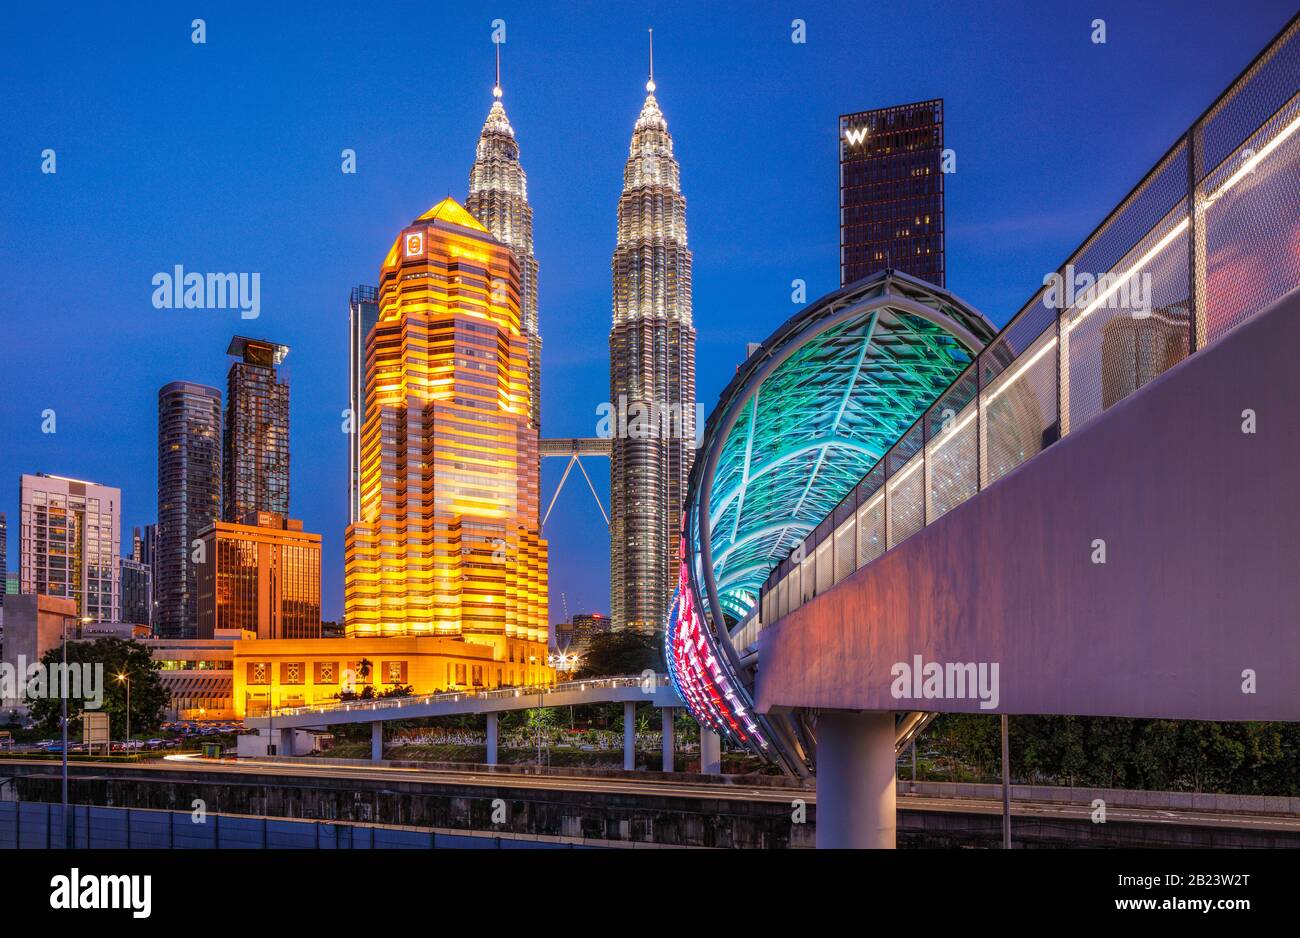 The Saloma Link Bridge in Kuala Lumpur, Malaysia. Stock Photo